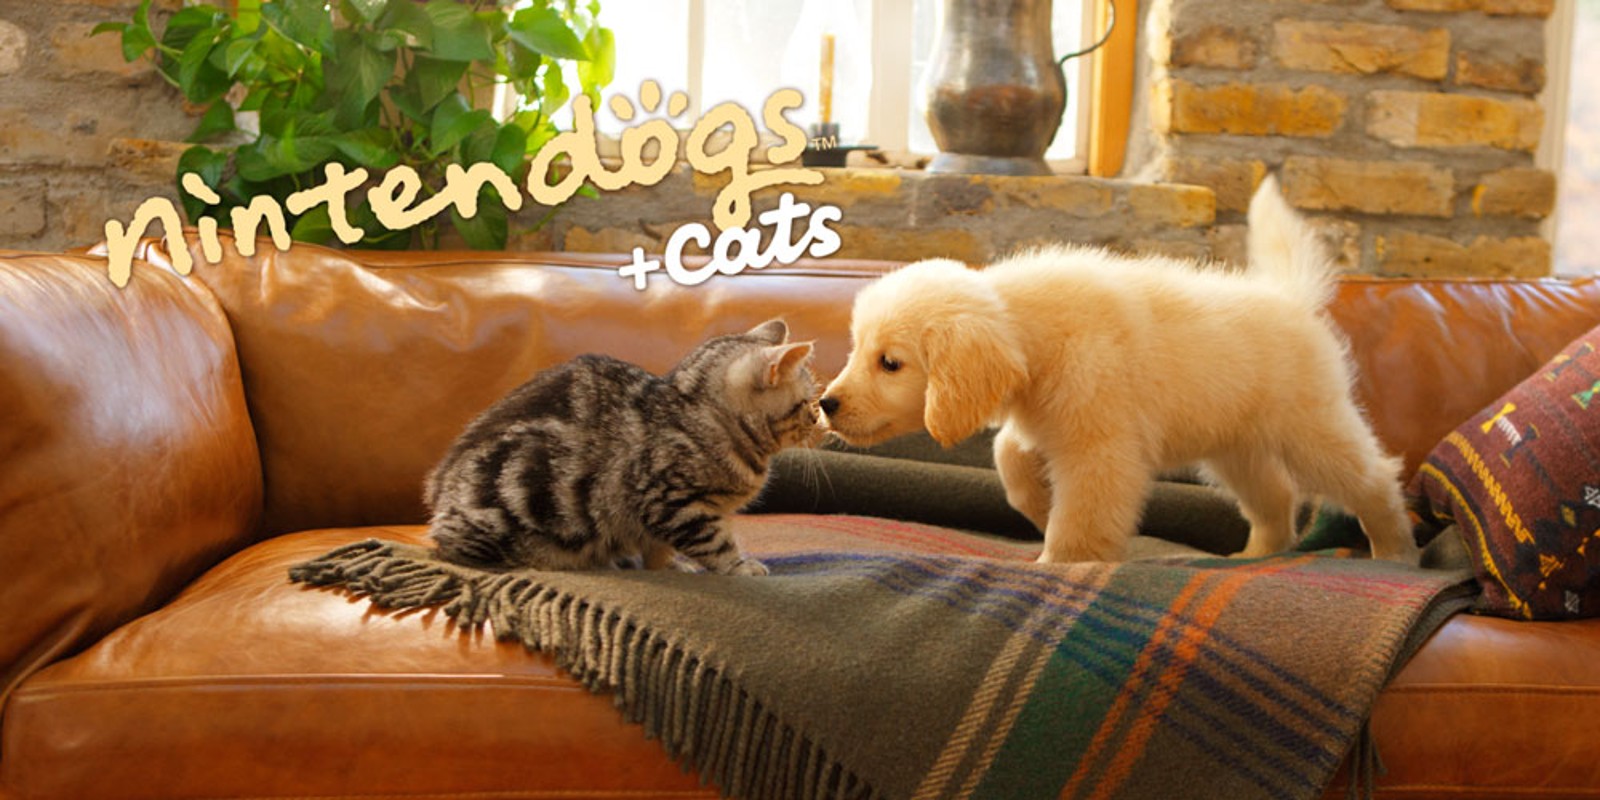 nintendogs + cats : Golden retriever & ses nouveaux amis